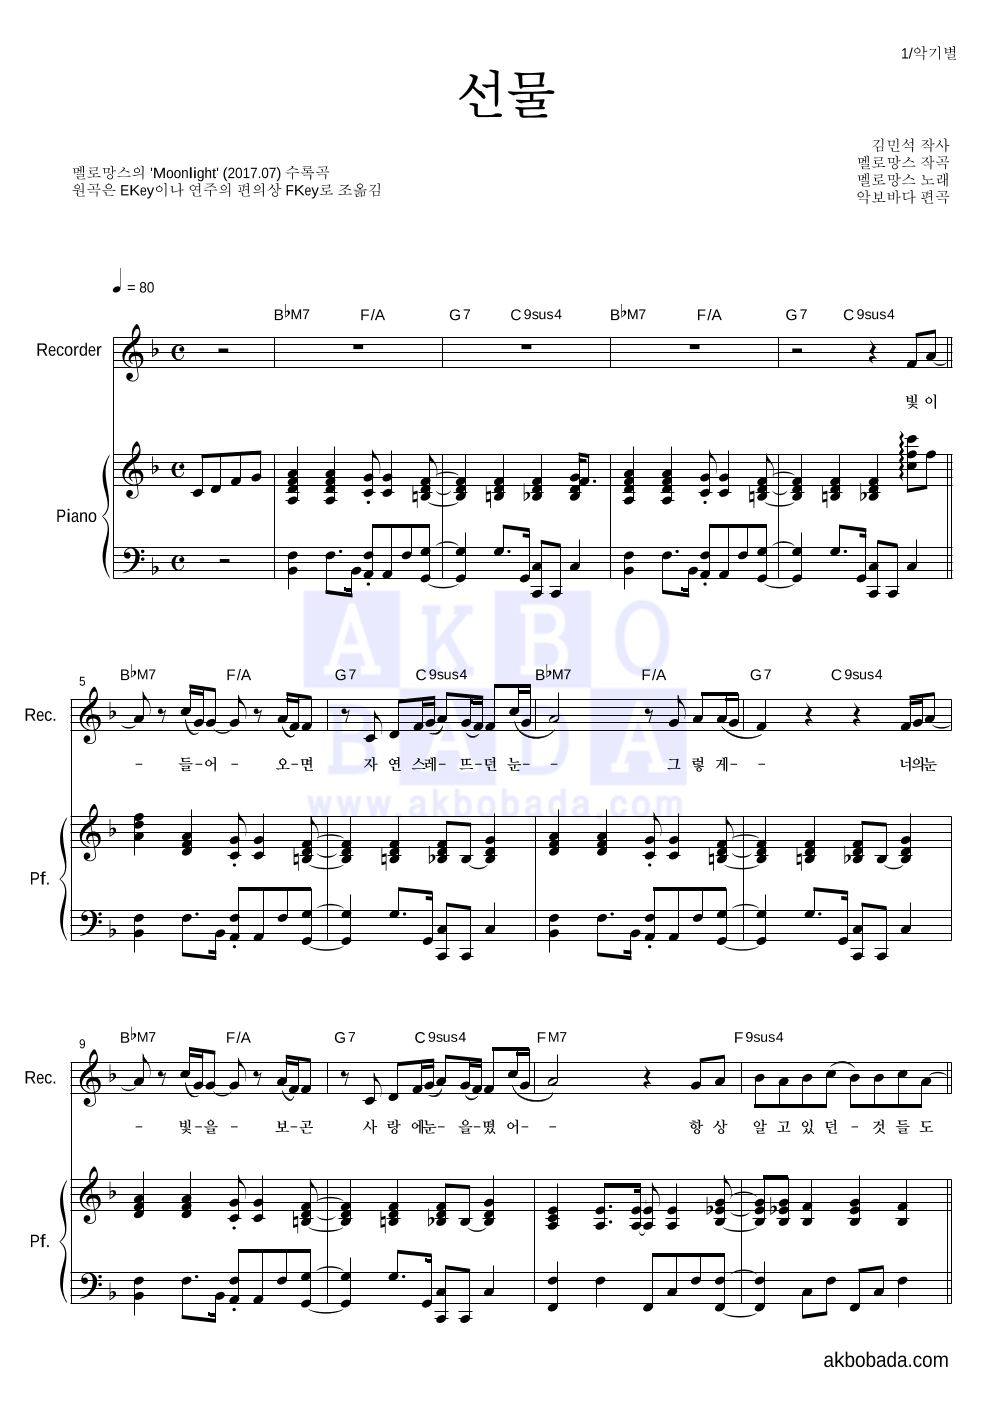 멜로망스 - 선물 리코더&피아노 악보 